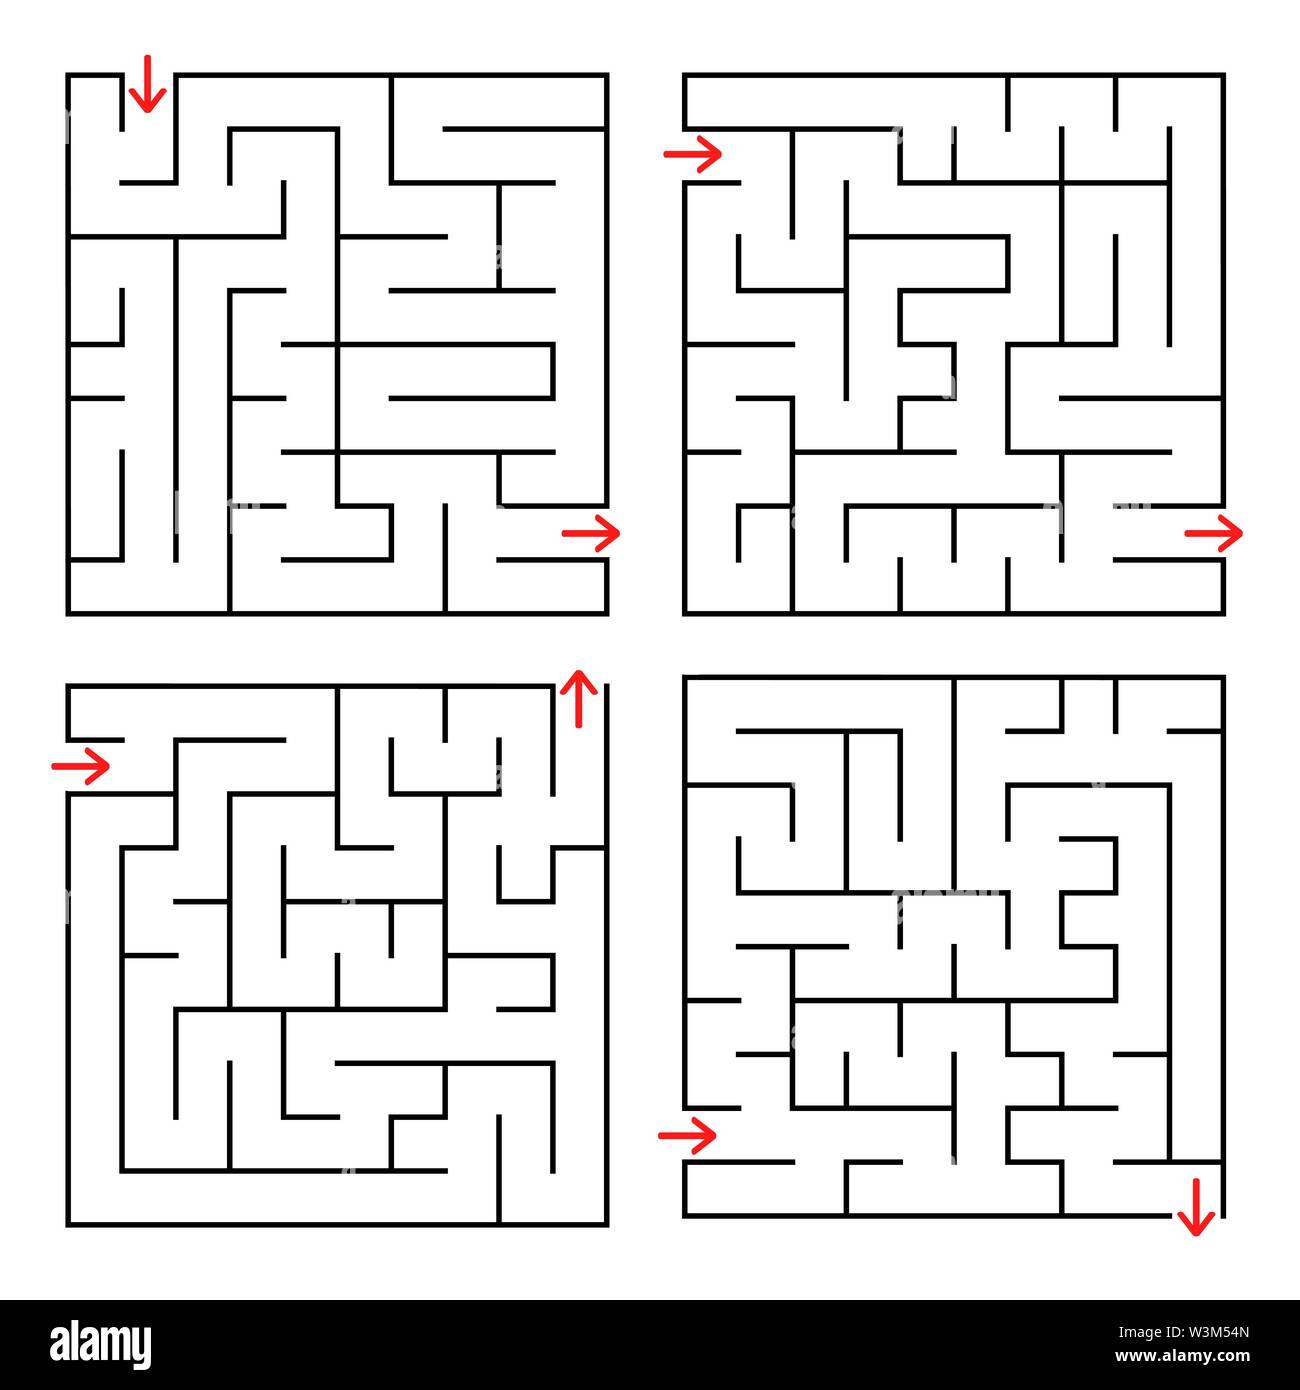 Abstrakte square isoliert Labyrinth. Farbe schwarz auf weißem Hintergrund. Ein interessantes und nützliches Spiel für Kinder und Erwachsene. Einfache flache Vektor illu Stock Vektor